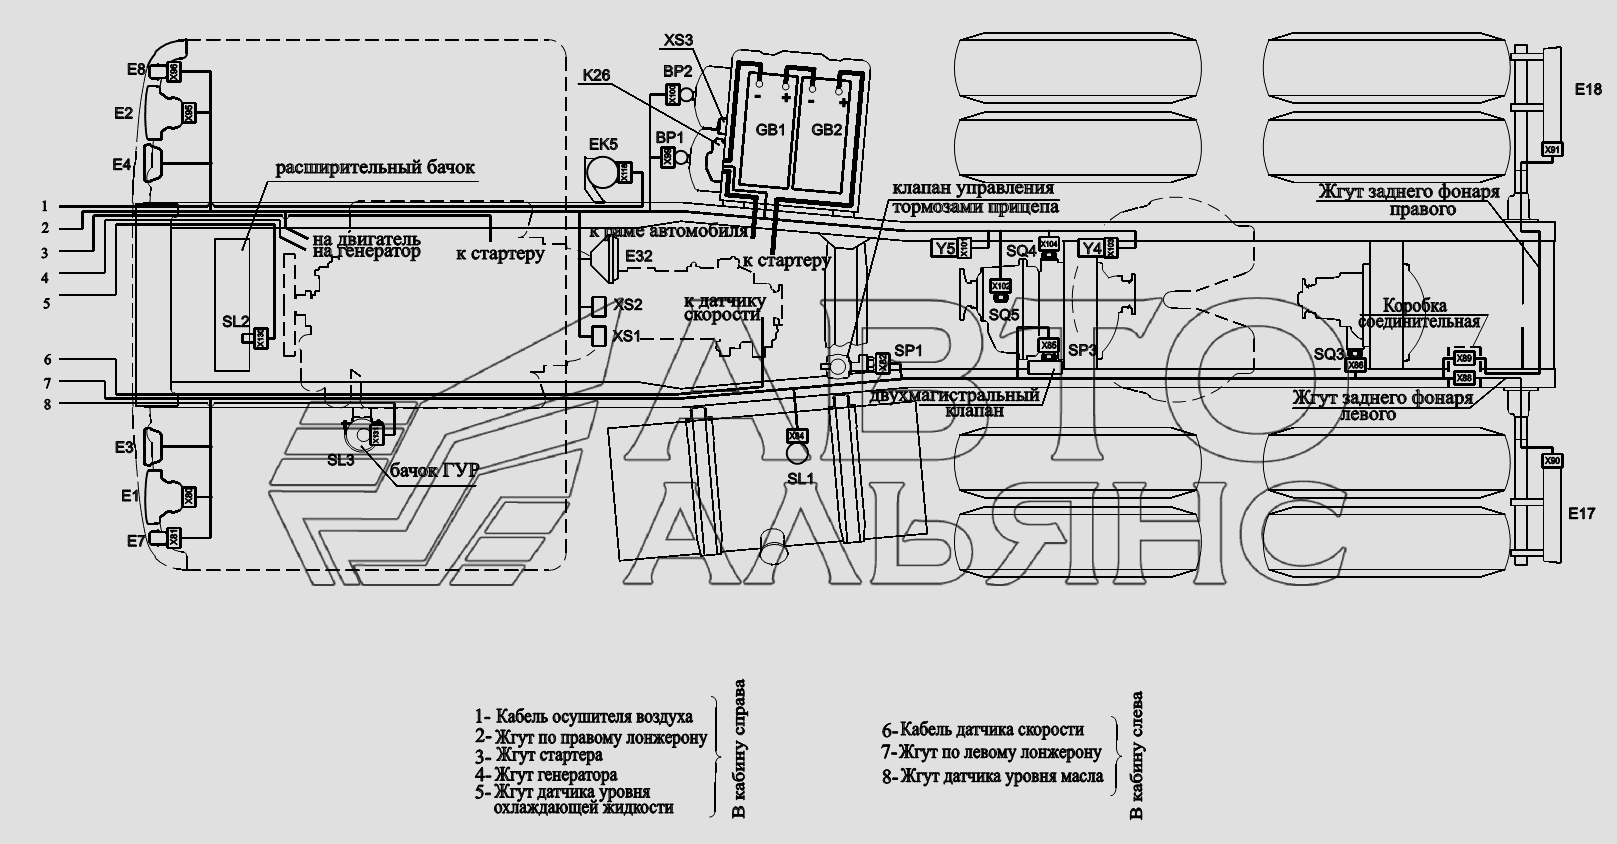 Расположение разъемов и элементов электрооборудования на шасси автомобилей(без автомобилей) МАЗ-6422, 5432